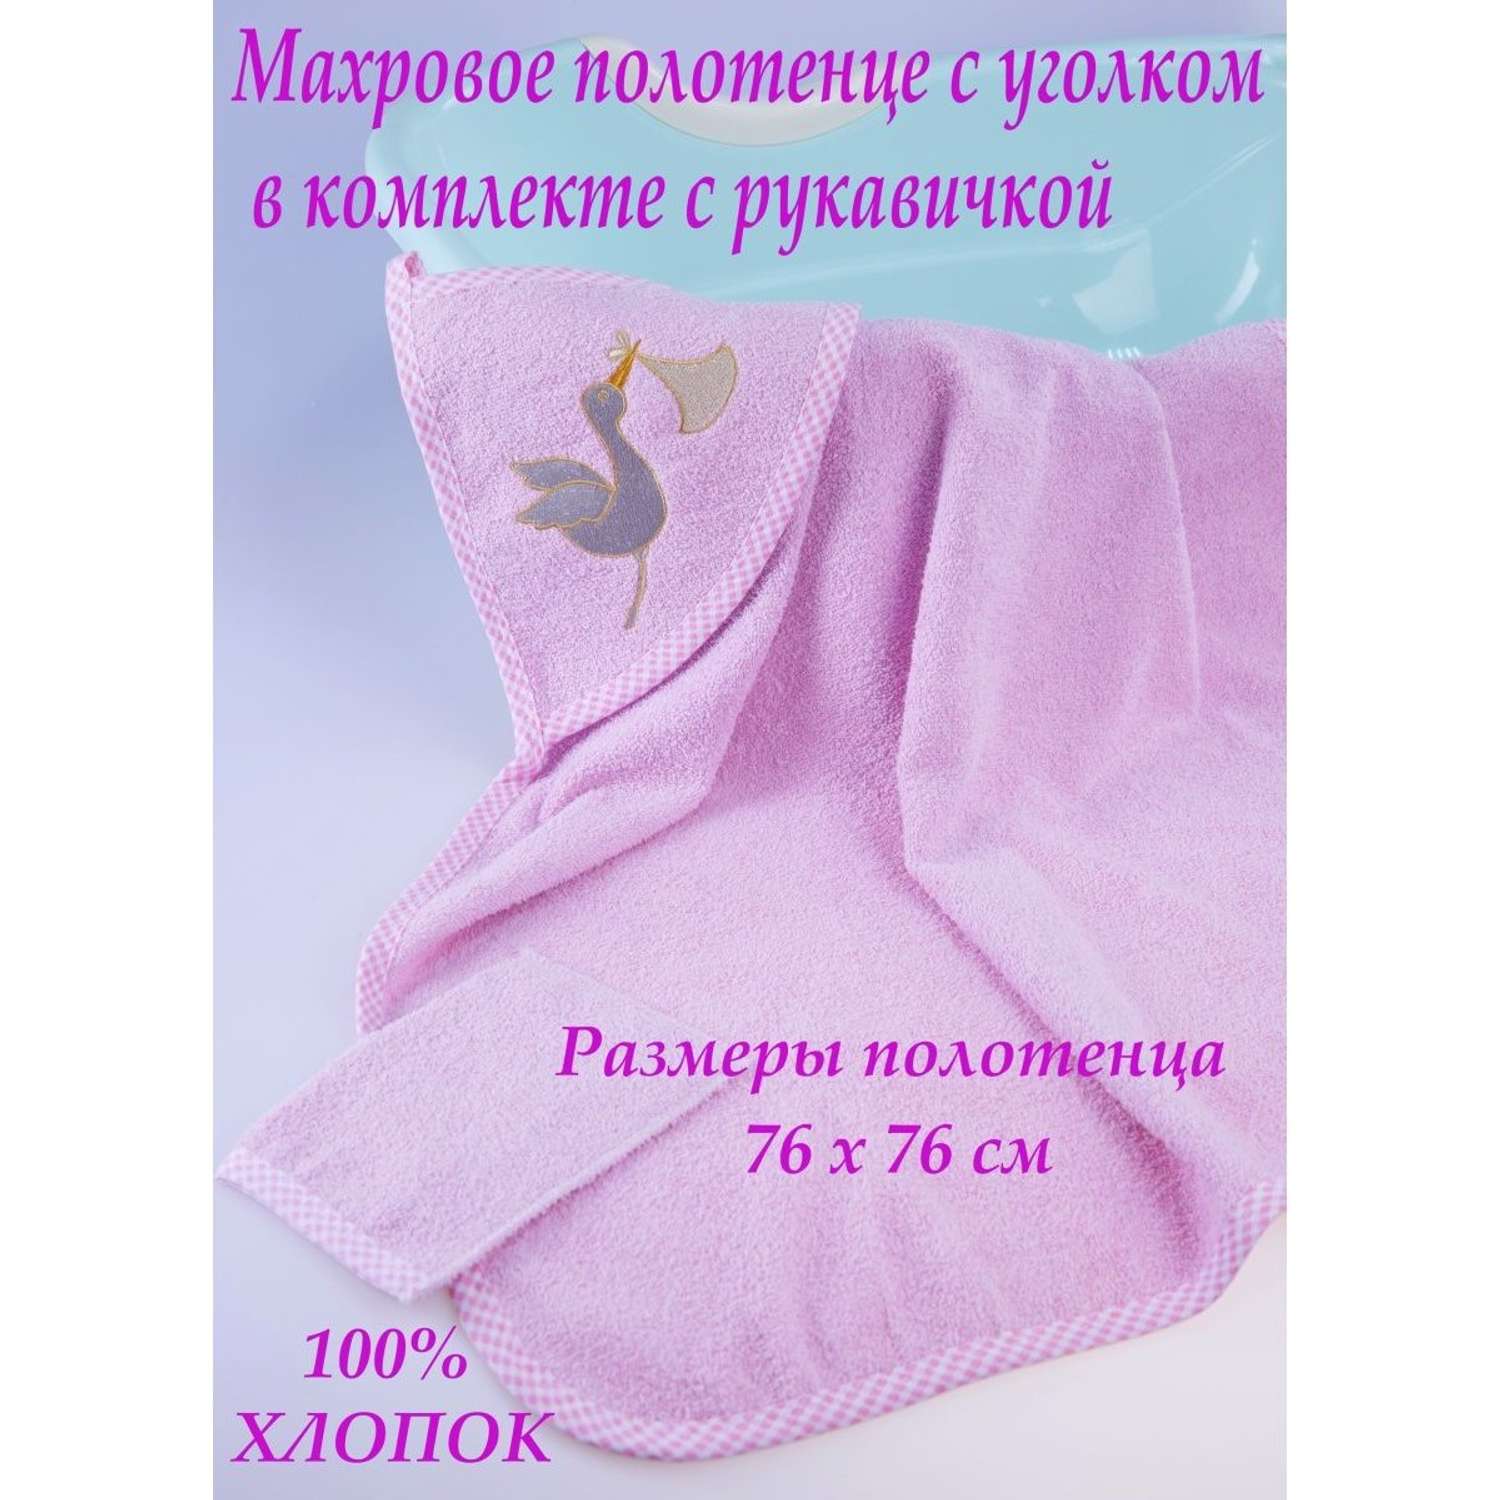 Набор для купания малыша M-BABY махровое полотенце с уголком и рукавичка 100% хлопок аист/розовый - фото 2